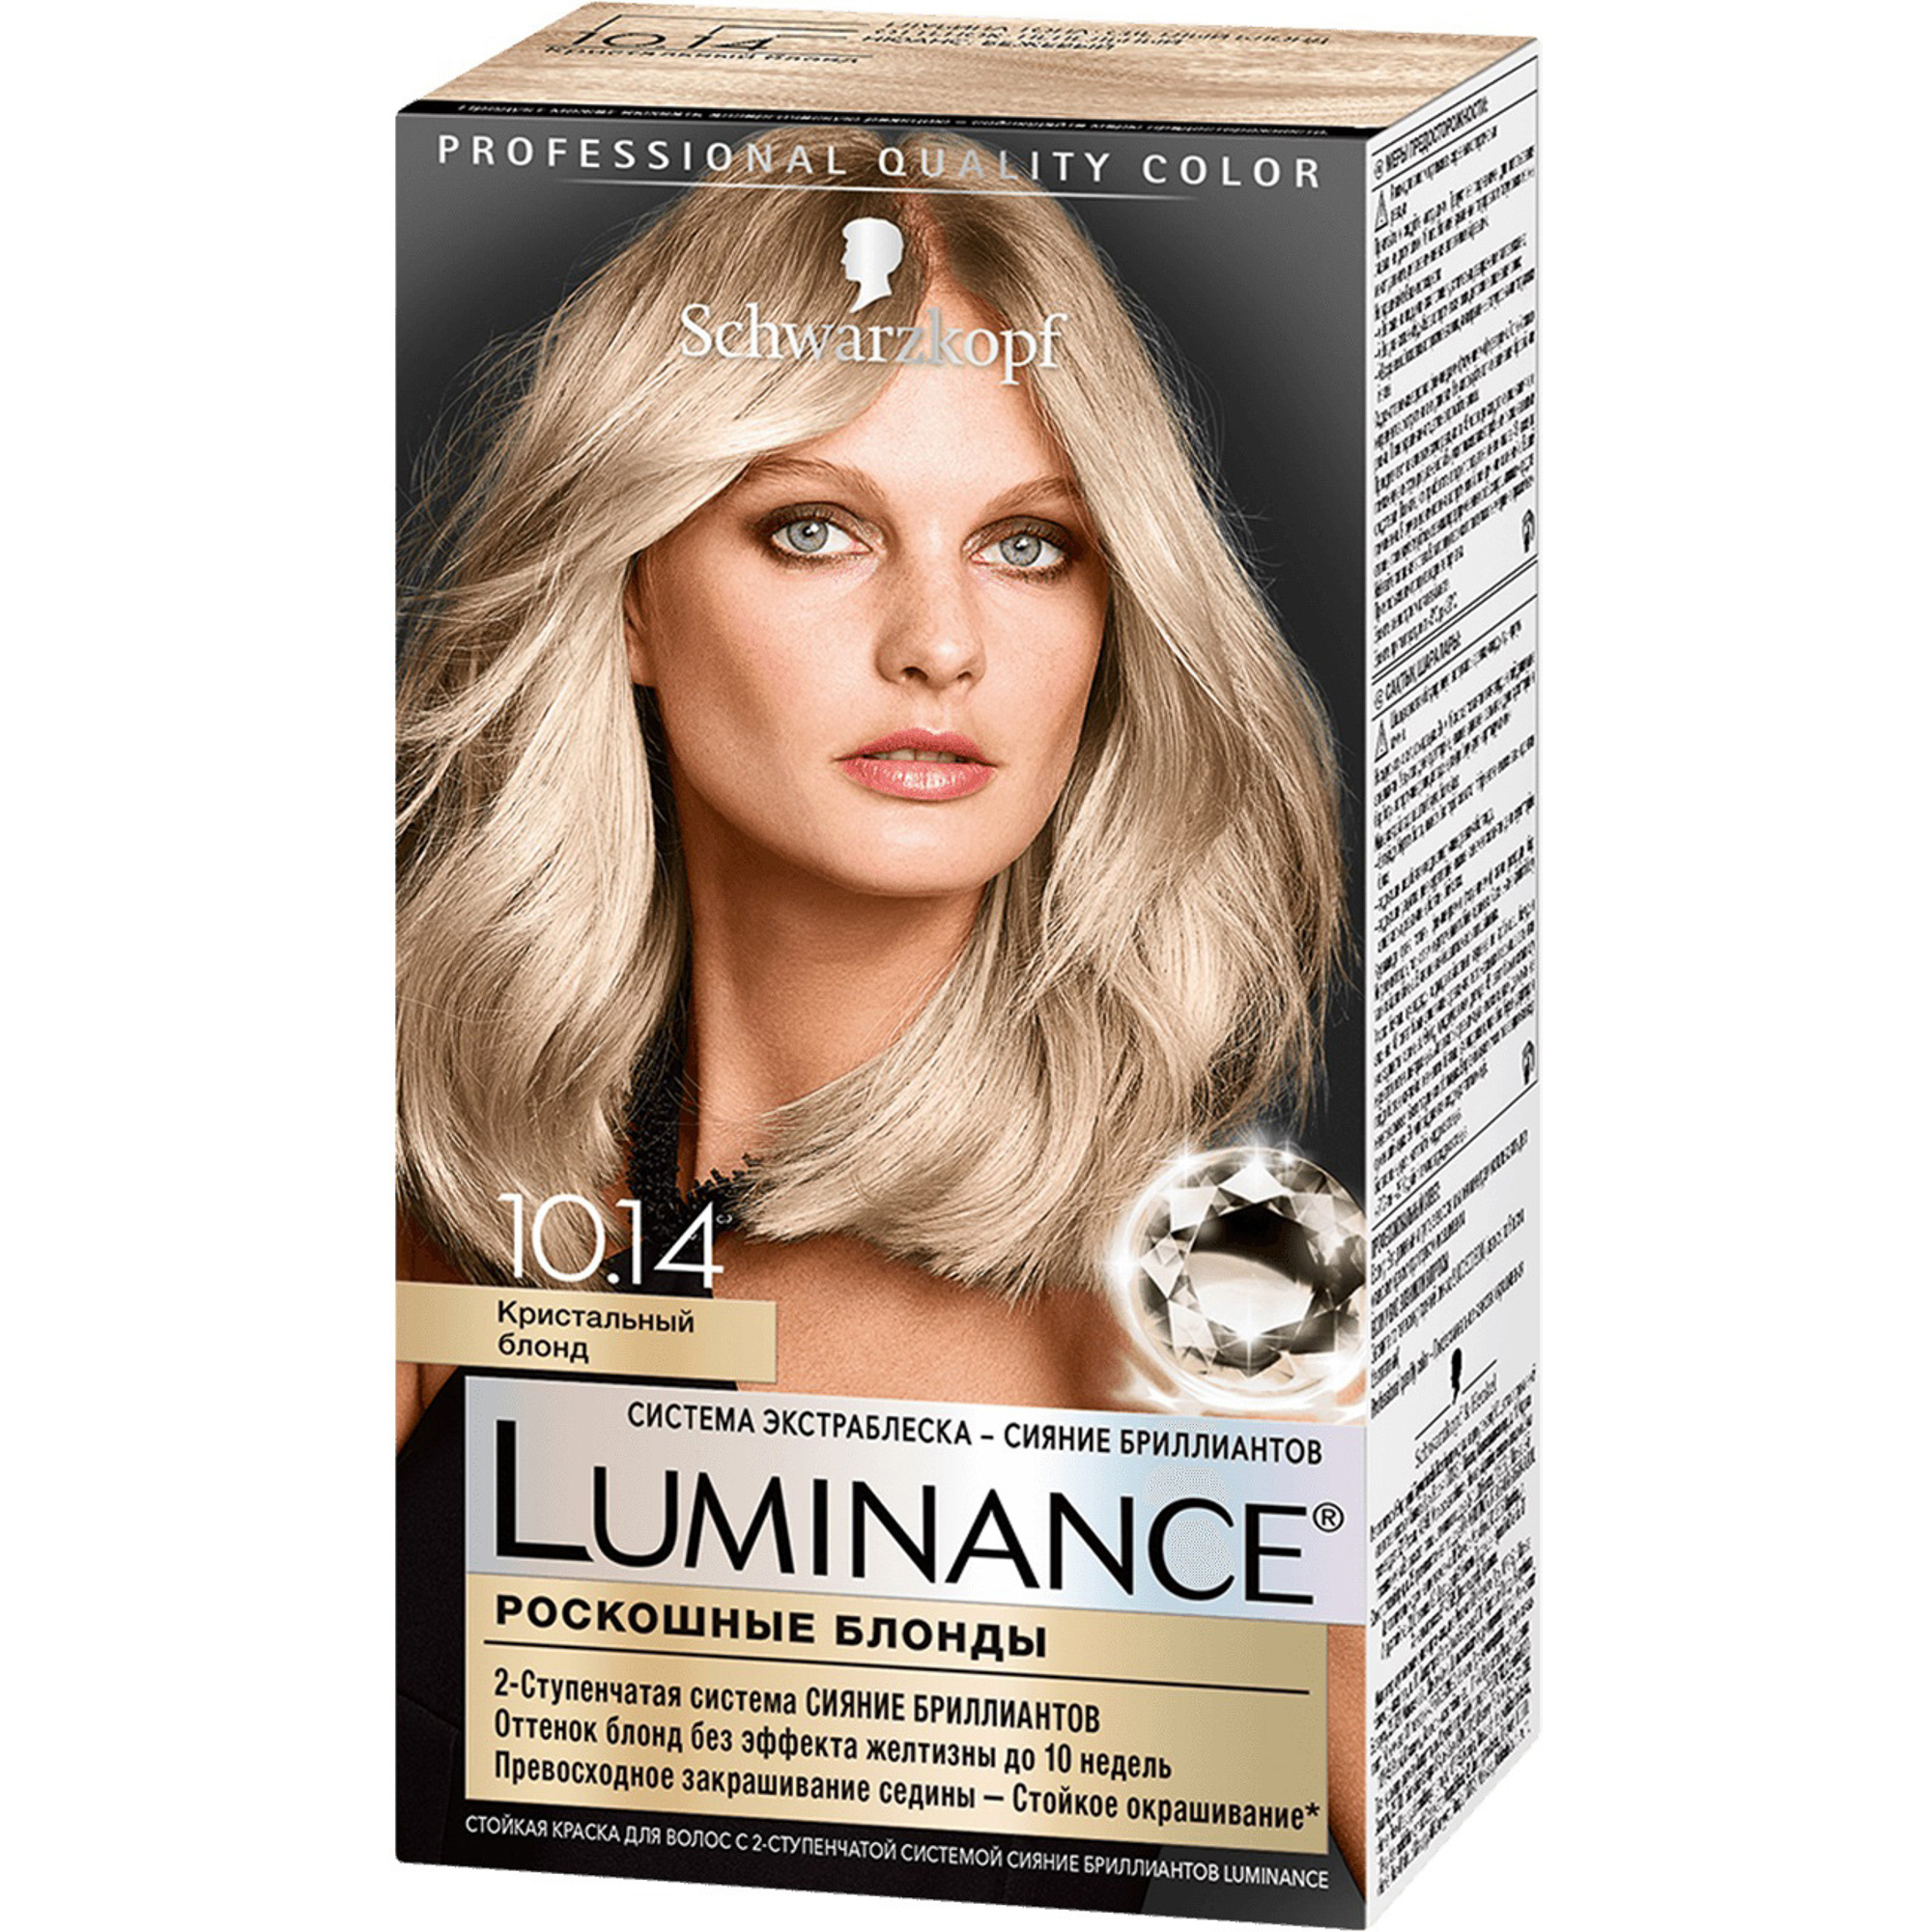 Краска для волос Schwarzkopf Luminance Color 10.14 Кристальный блонд краска для волос 10 14 кристальный блонд luminance люминенс 165мл